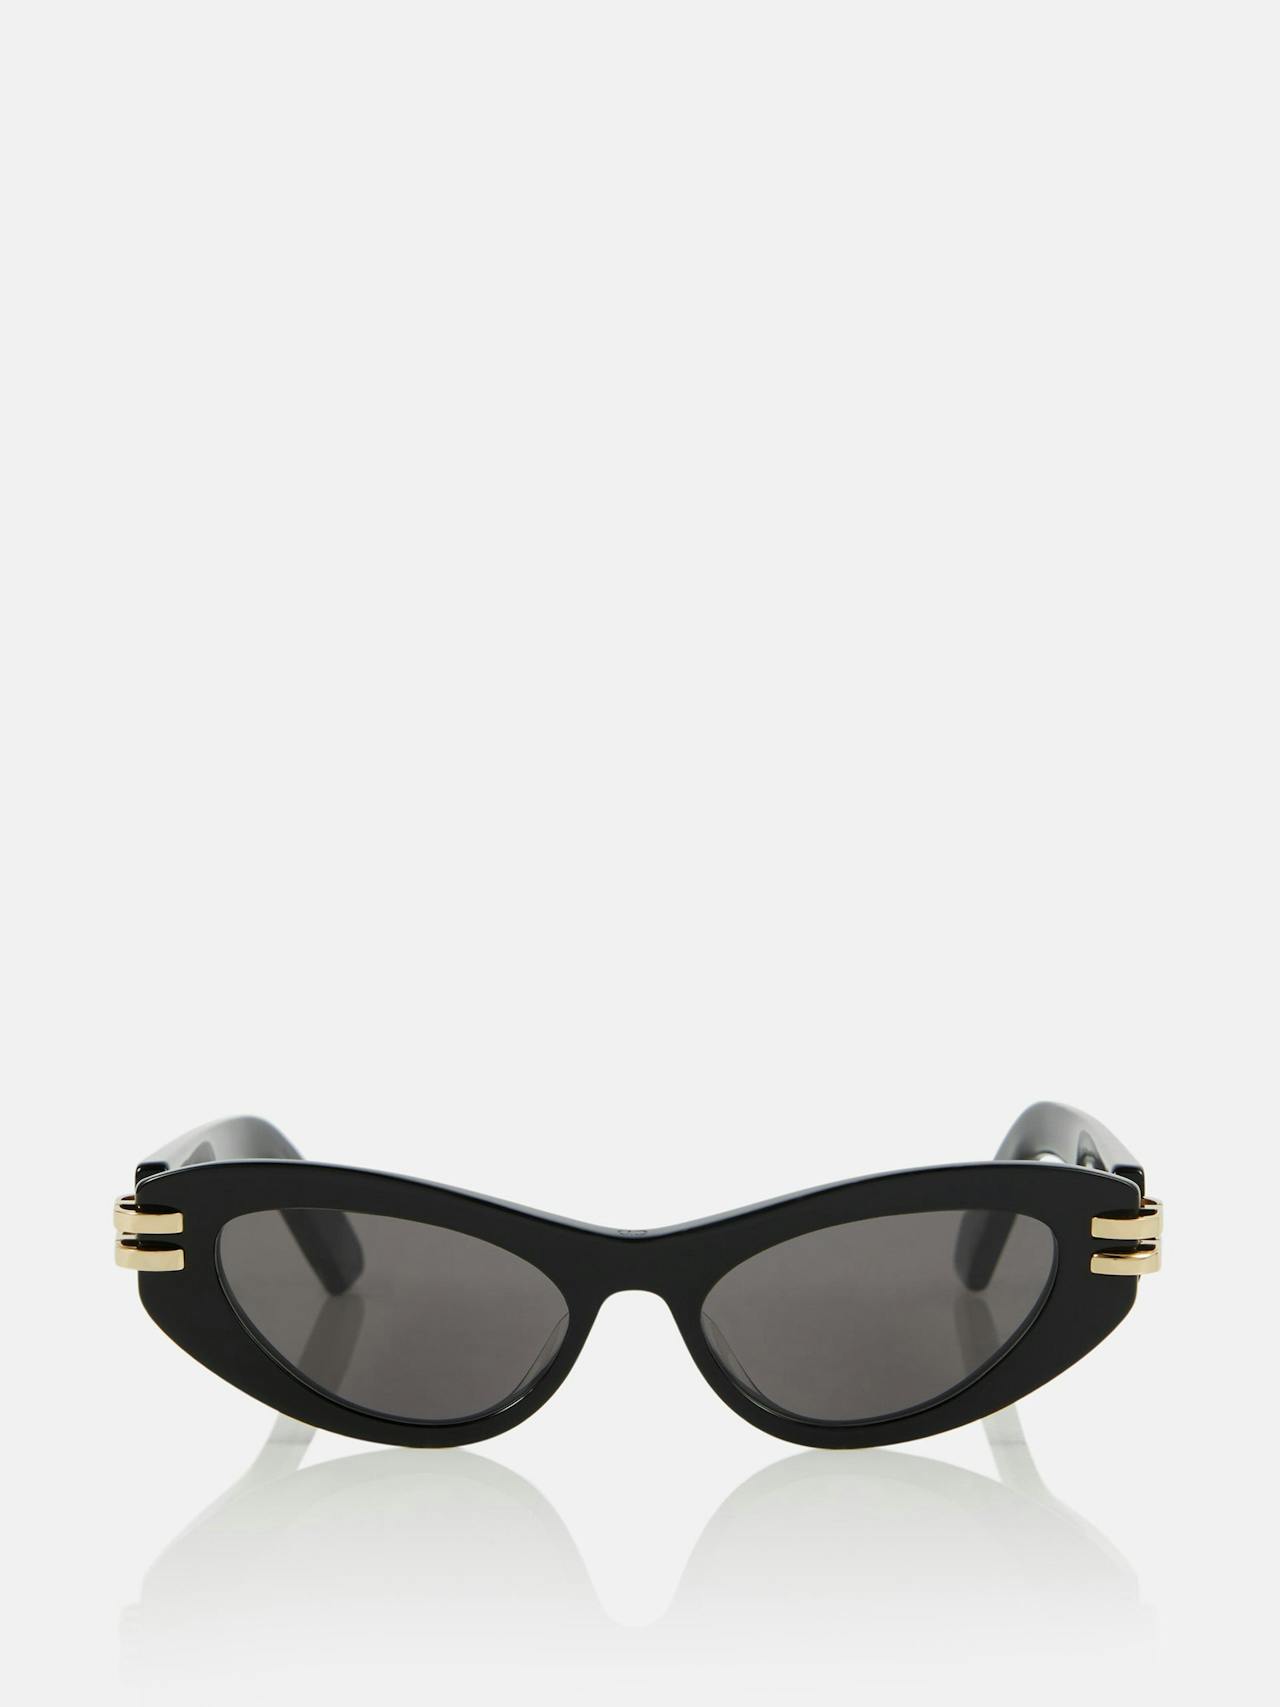 CDior B1U cat-eye sunglasses